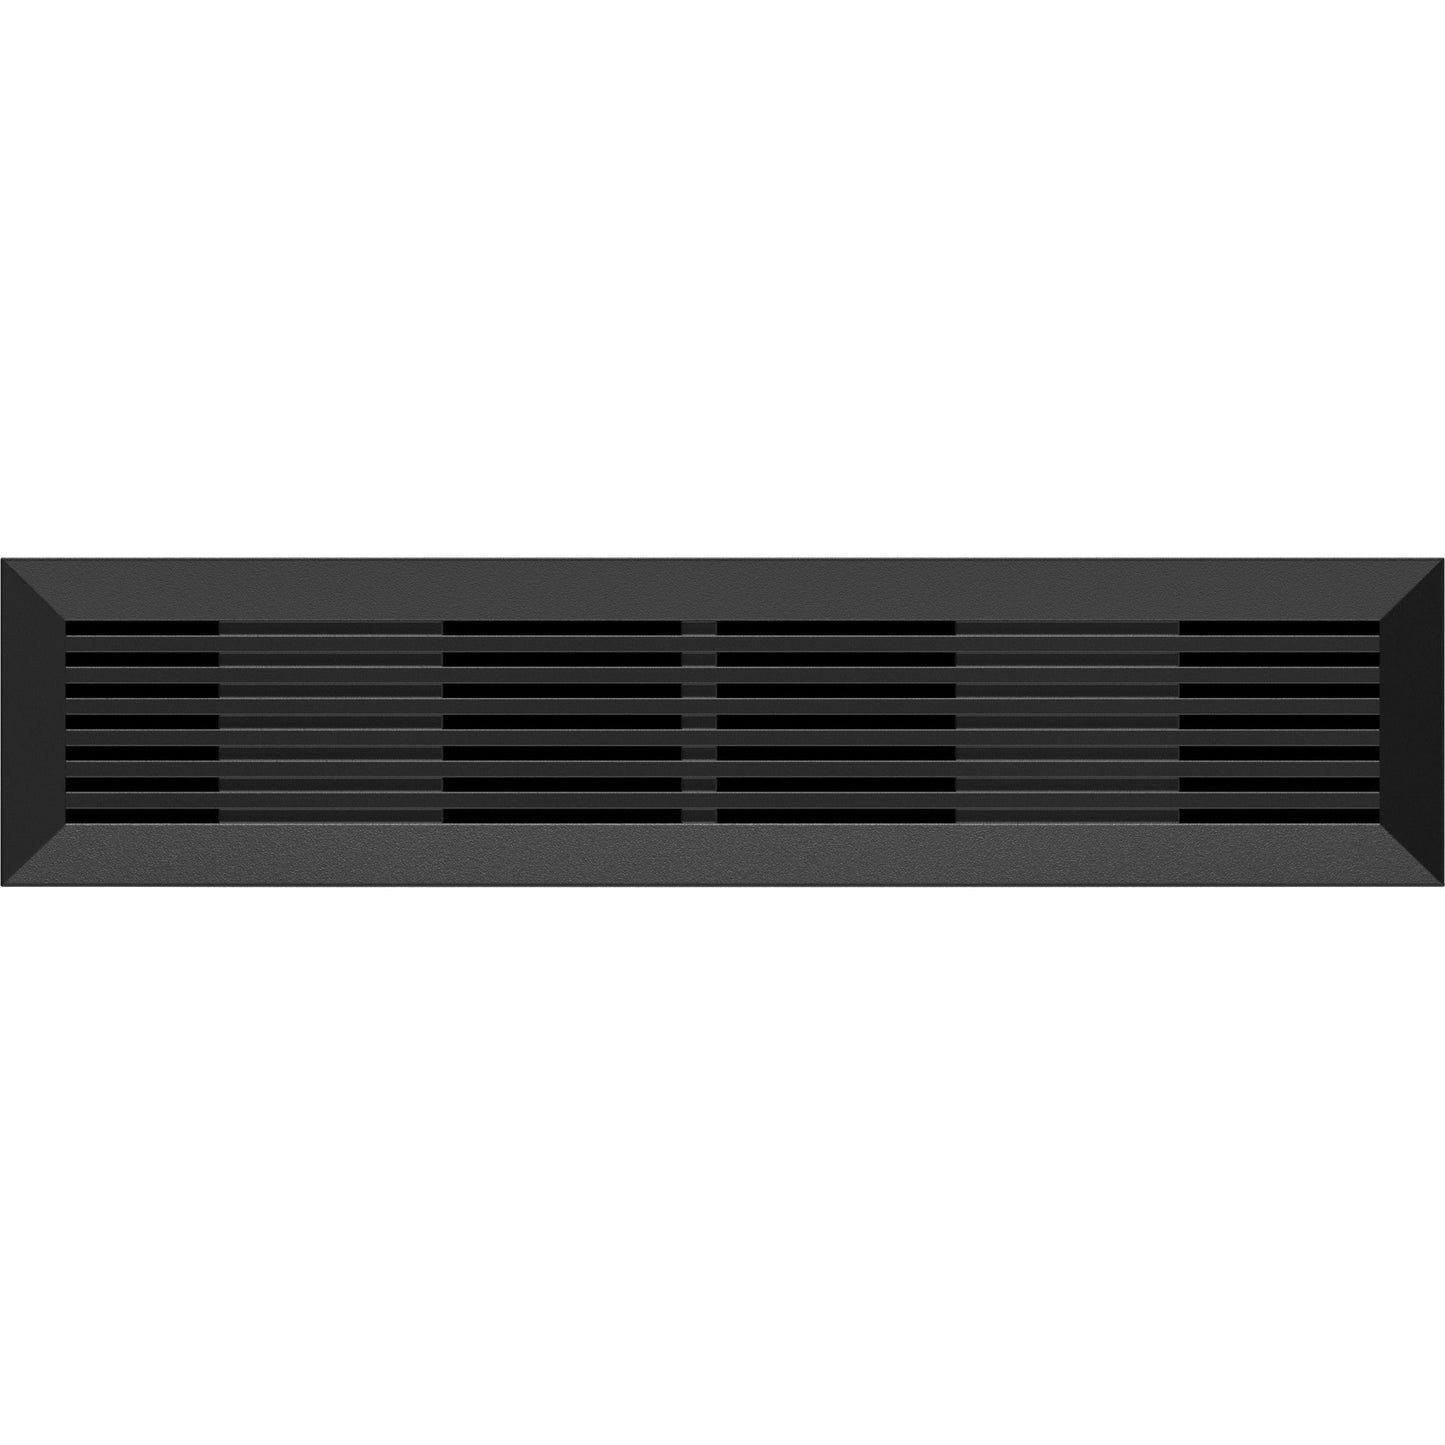 Seagate One Touch STLC8000400 8 TB Hard Drive - 3.5" External - SATA (SATA/600) - Black